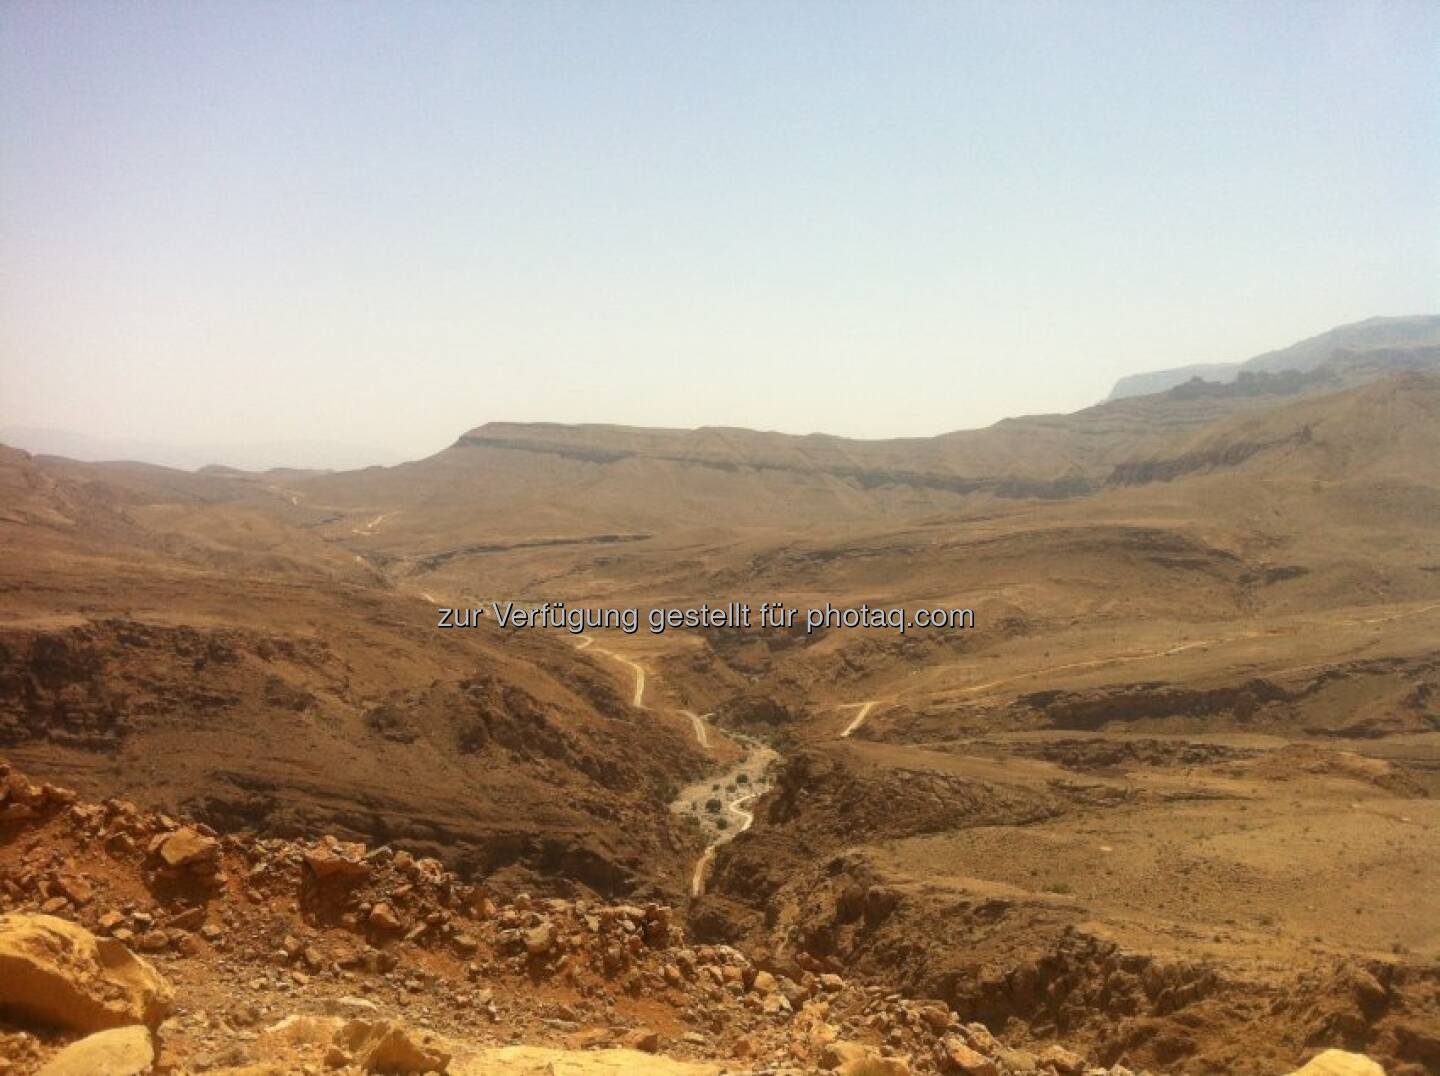 Vom Ministry of Regional Municipalities and Water Resources erhielt die arabische Strabag Oman LLC den Auftrag zum Bau eines Hochwasserschutzdamms in der Nähe von Sur im Oman. Das Auftragsvolumen beträgt € 92 Mio. Zusätzlich zum Bau des 1,2 km langen Erddamms umfasst das Projekt erhebliche Erd- und Erosionsschutzarbeiten im Abfluss des Wadi-Kanals sowie den Bau einer 5 km langen Umleitung einer bestehenden Überlandstraße. Bis August 2016 sollen die Arbeiten abgeschlossen sein.
Bild: Der derzeitige Zustand der Straße zwischen Wadi Mingal und Wadi Bani Jaber